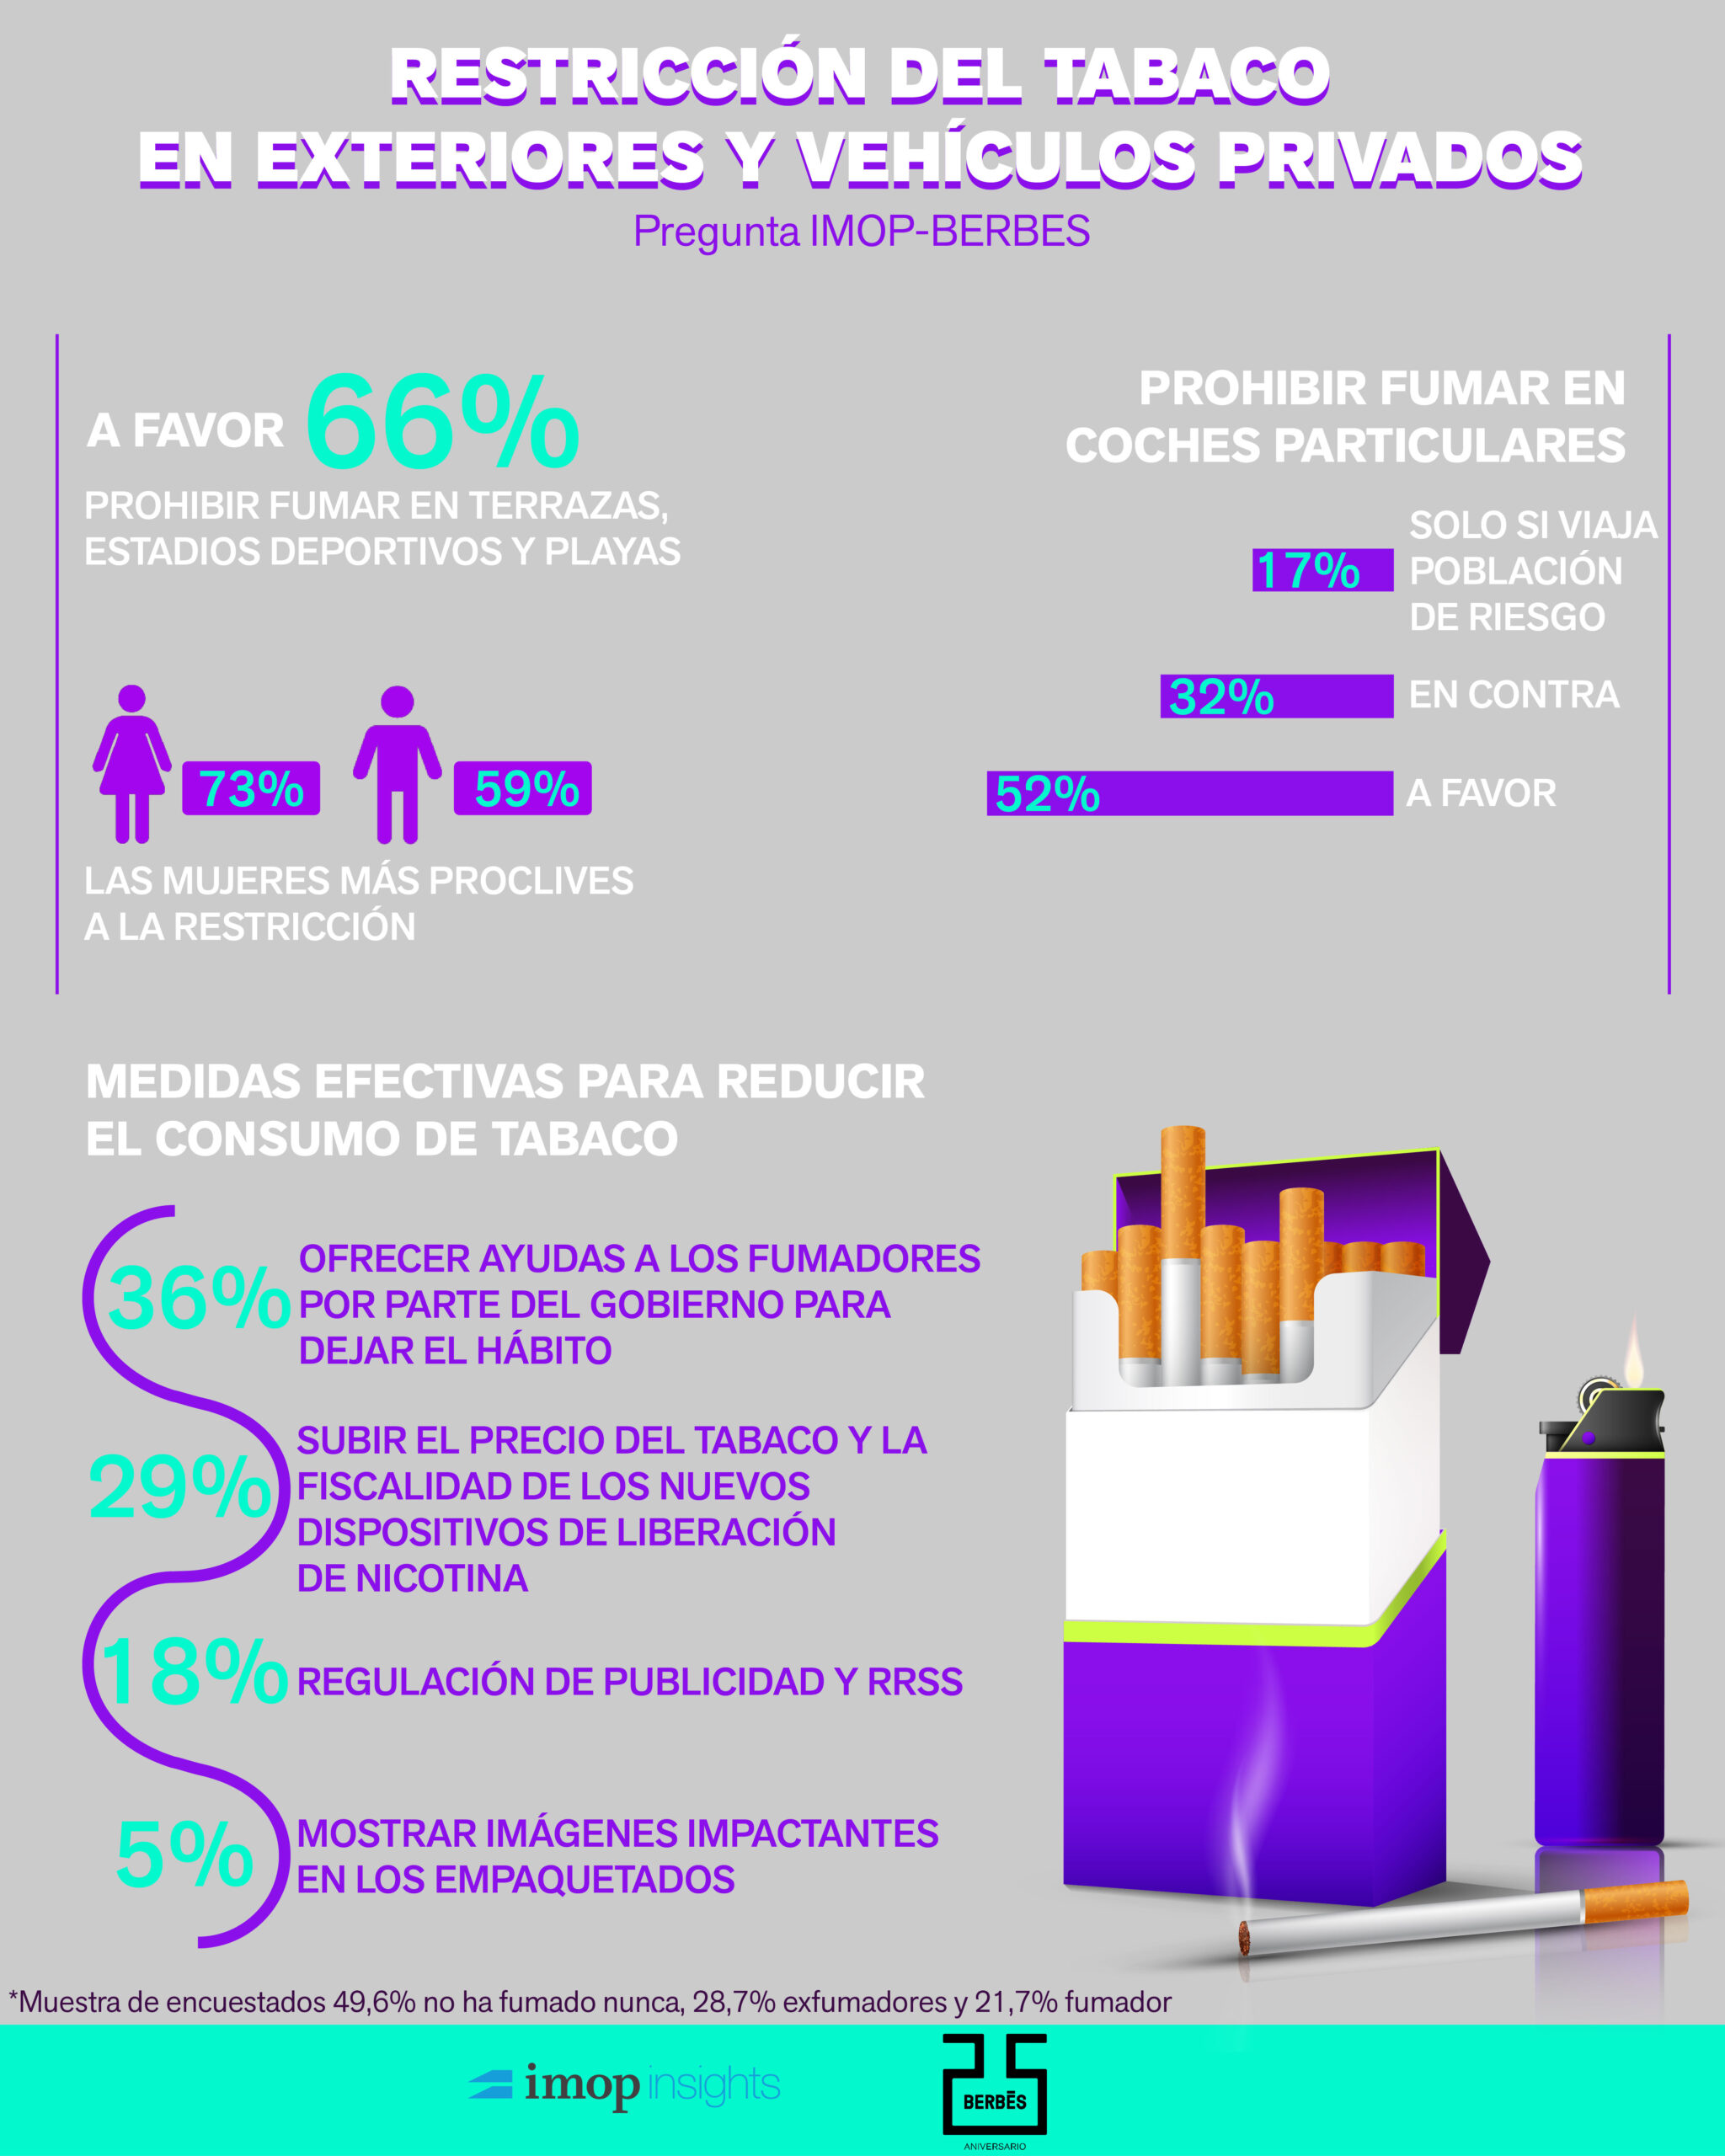 La mayoría de los españoles aprueba restringir el tabaco en exteriores y vehículos particulares